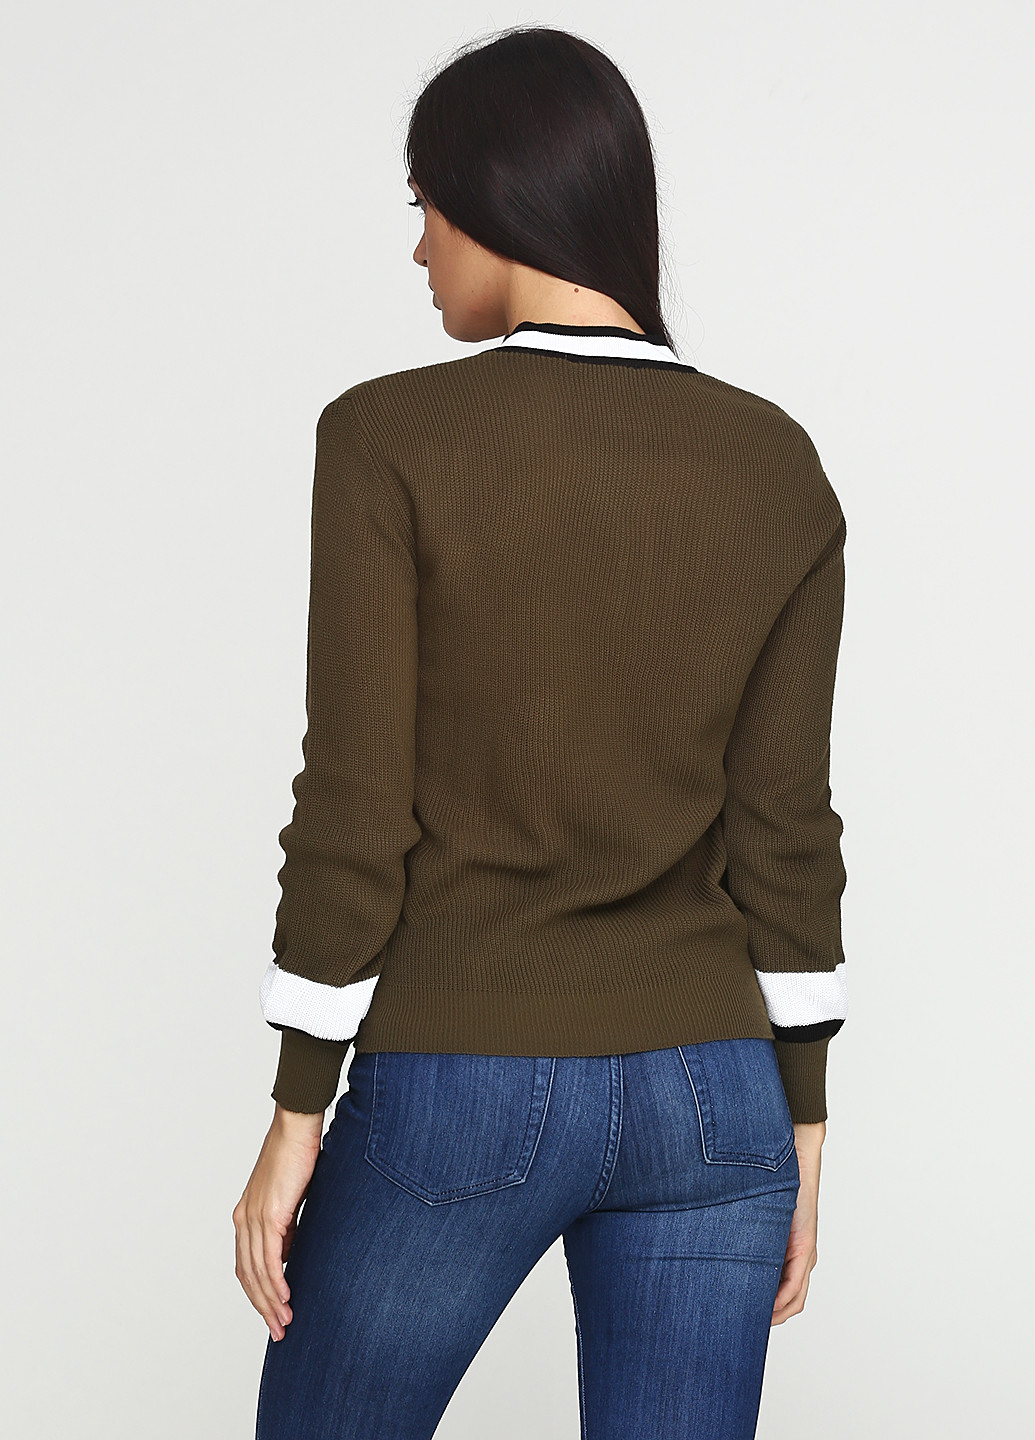 Оливковый (хаки) демисезонный пуловер пуловер Imperial